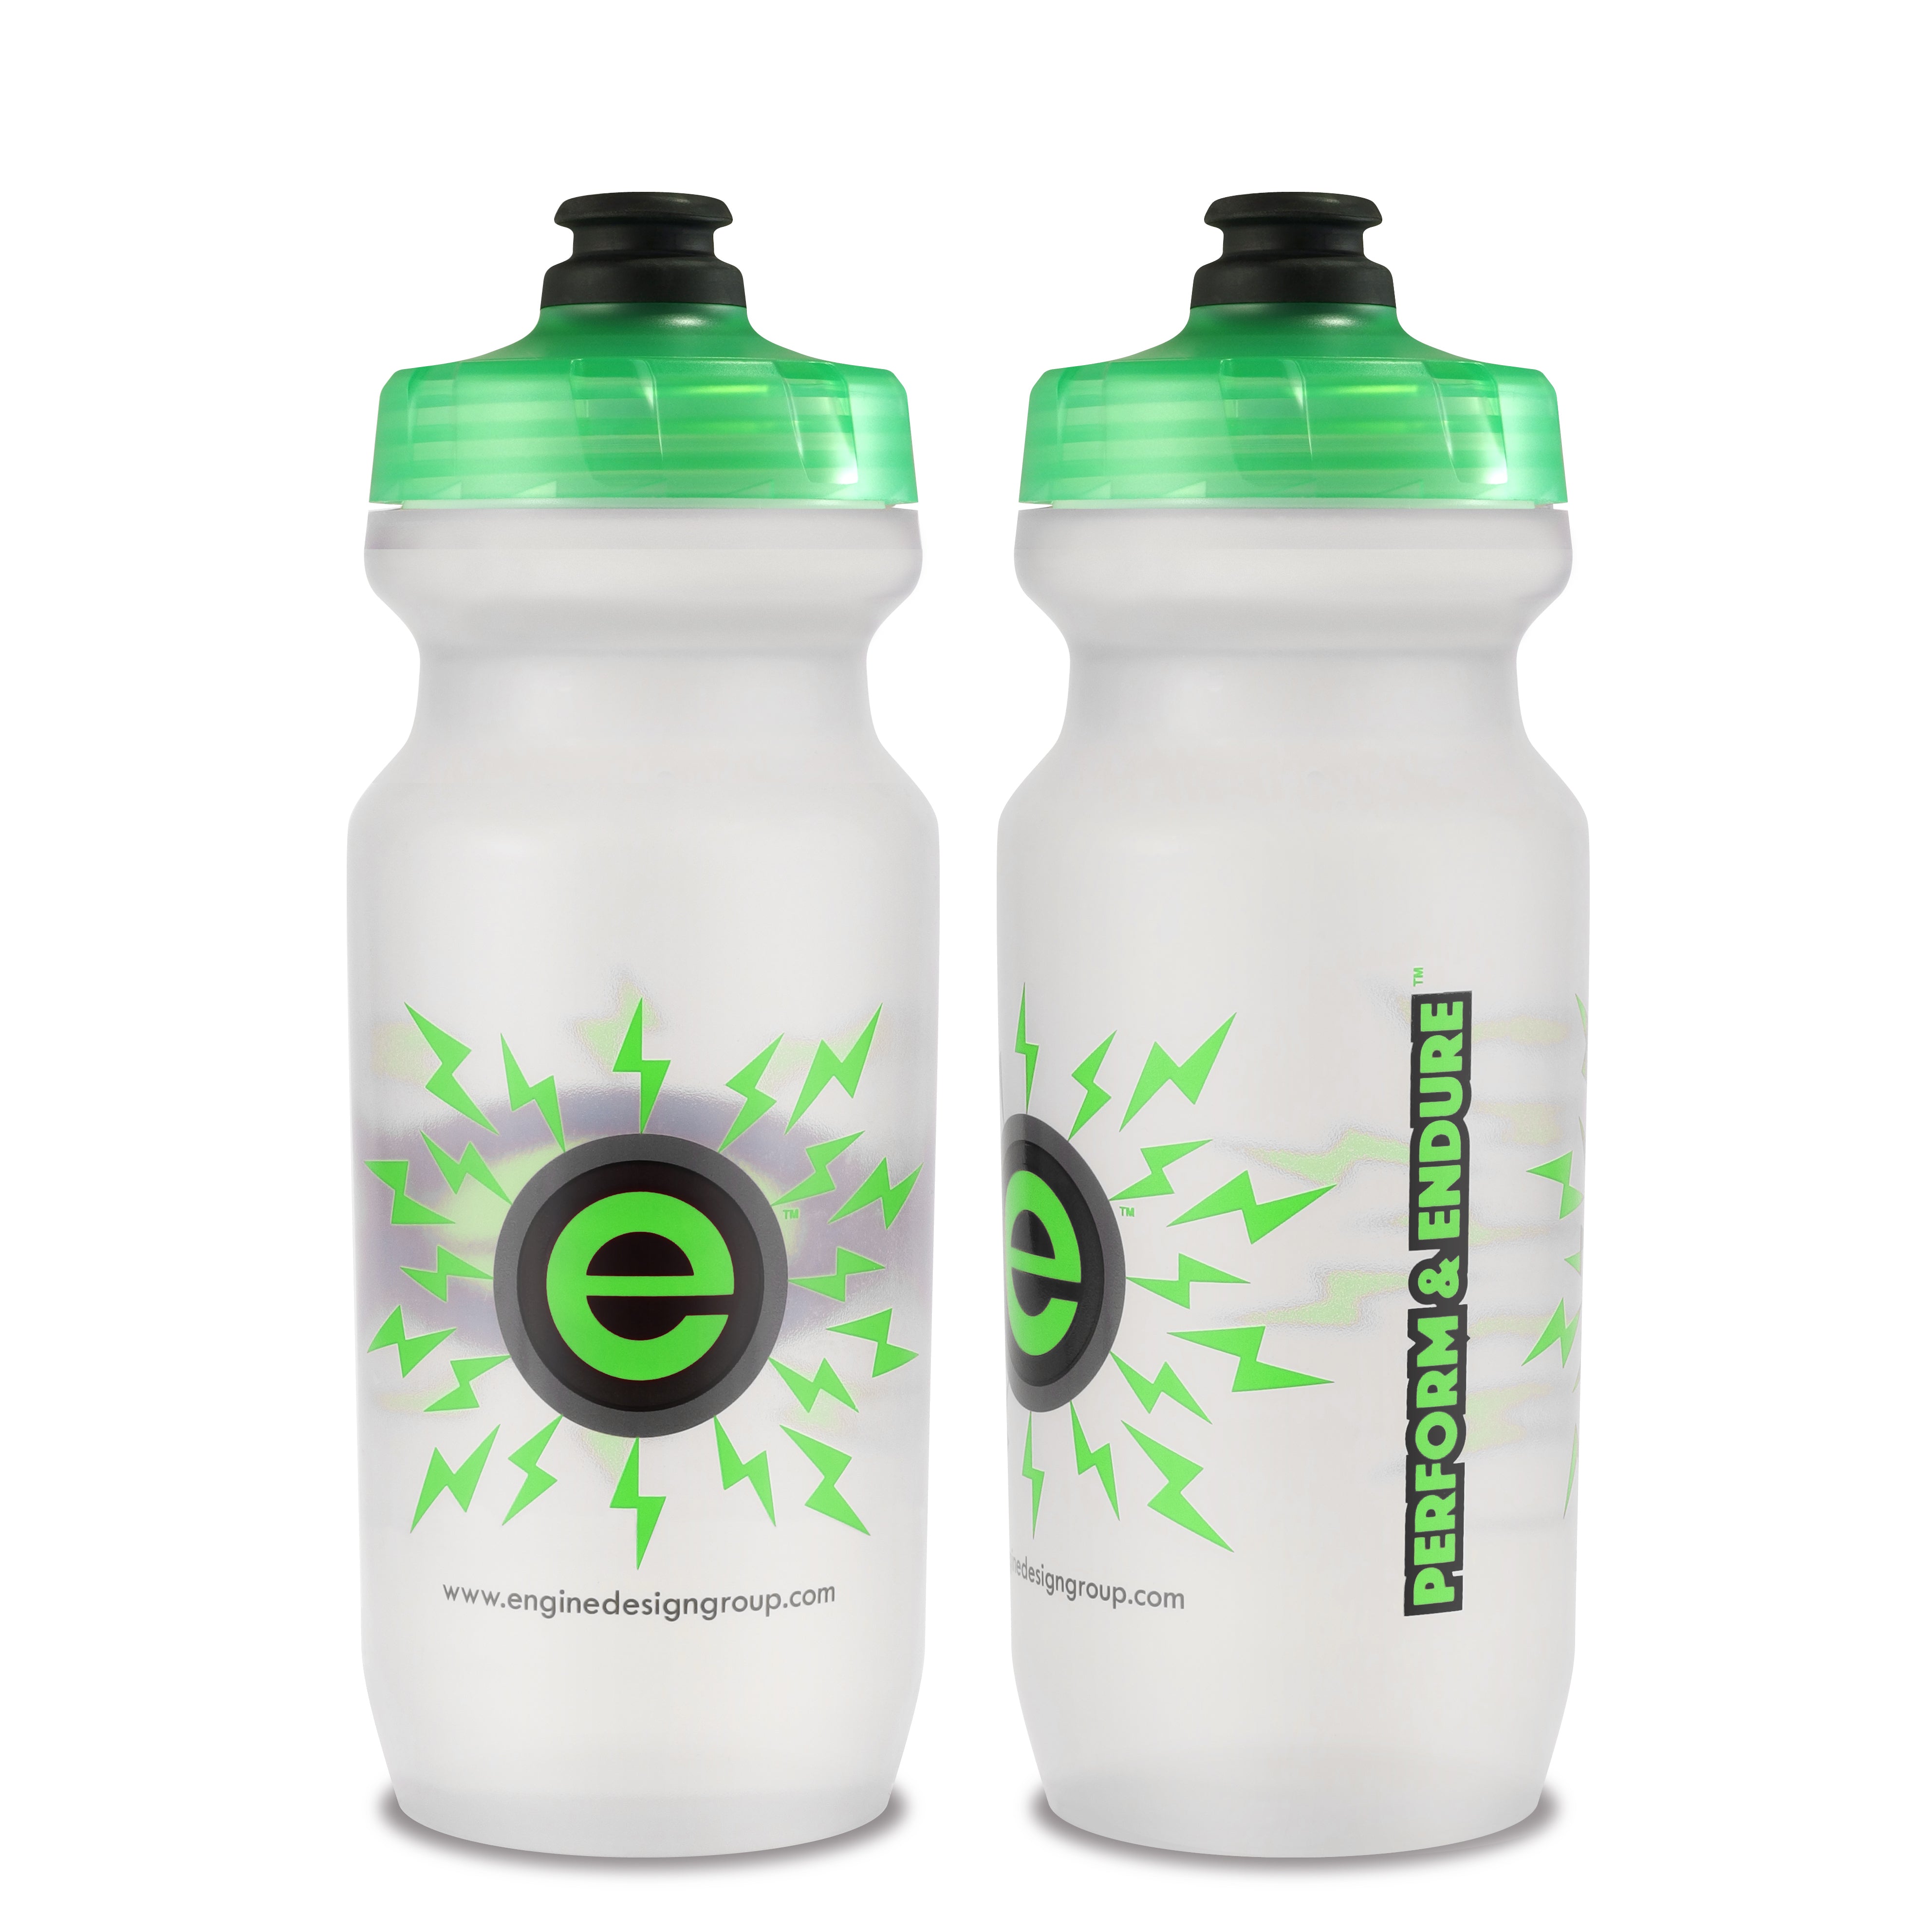 https://www.enginedesigngroup.com/cdn/shop/products/21oz-Engine-Design-Group-NGN-Sport-Bike-Water-Bottle-CLR-GRN.jpg?v=1567926820